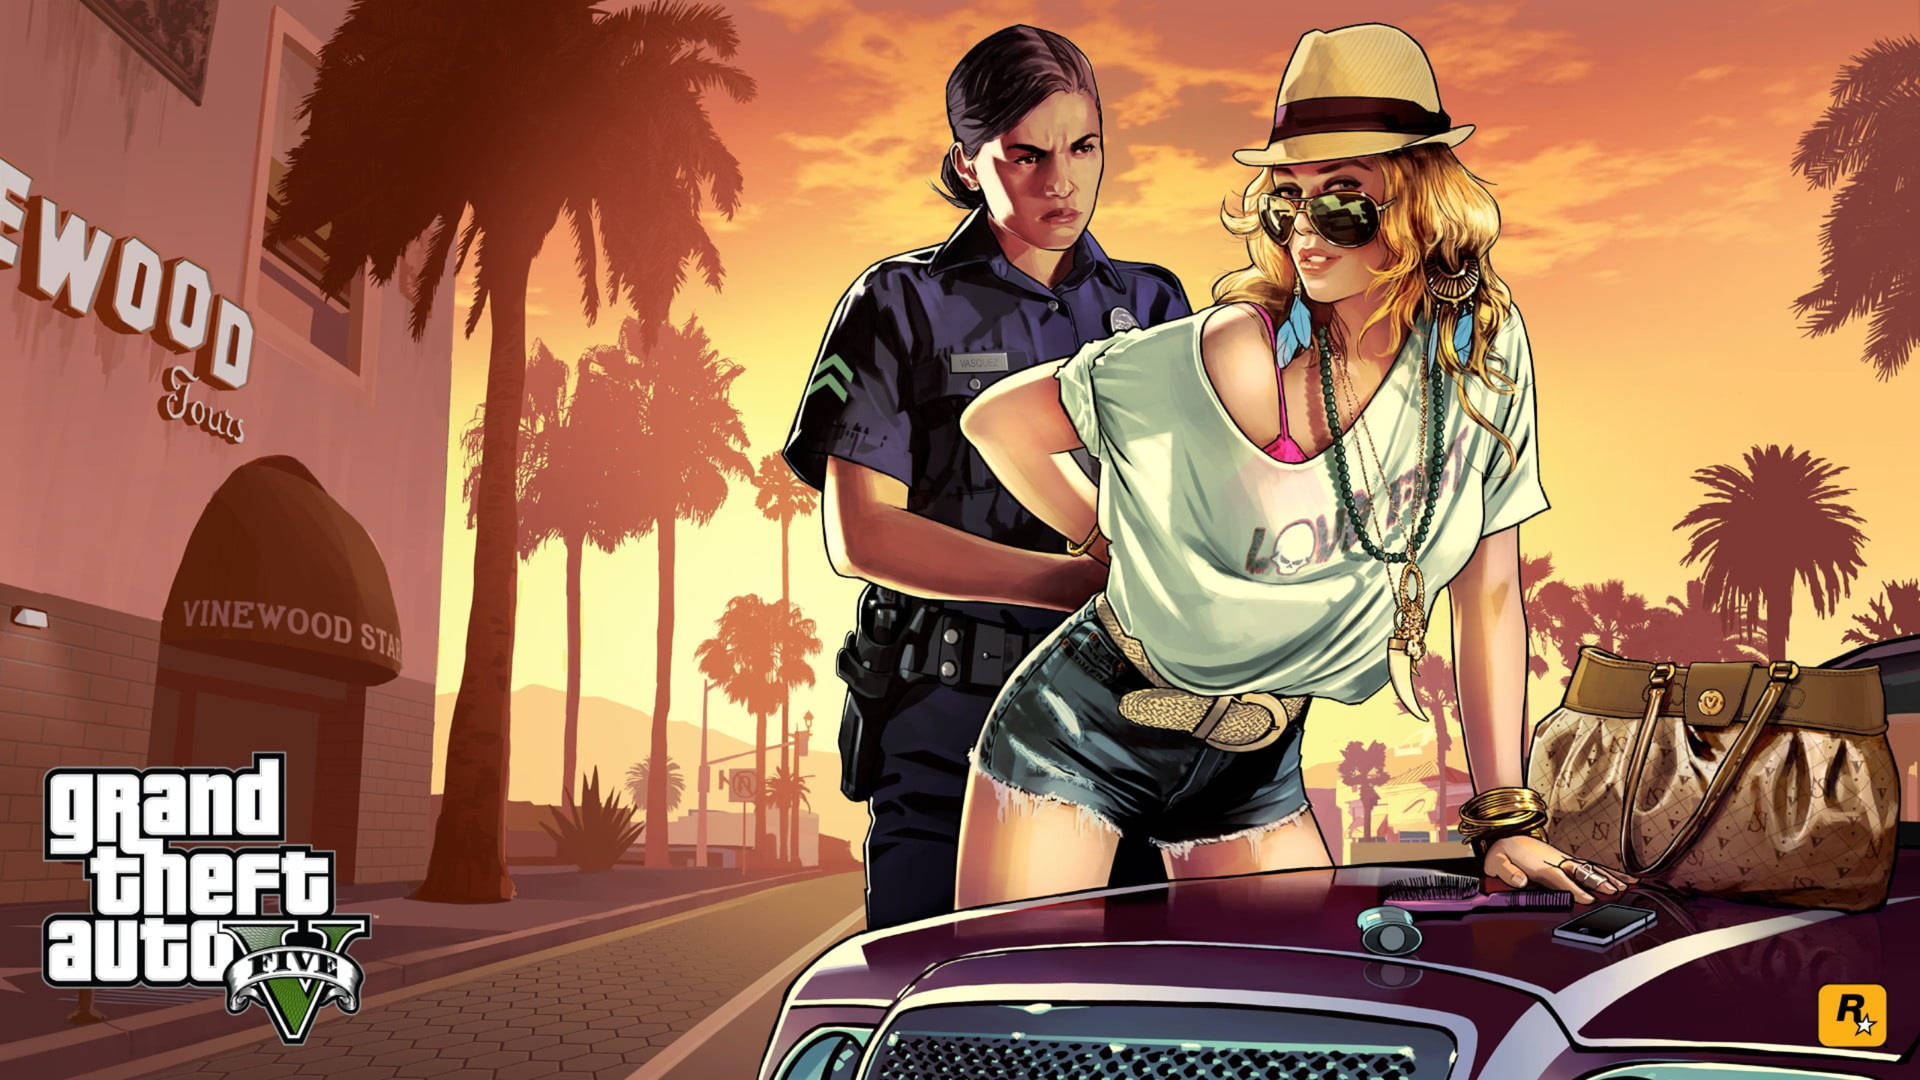 Grand Theft Auto Arresting A Woman Wallpaper